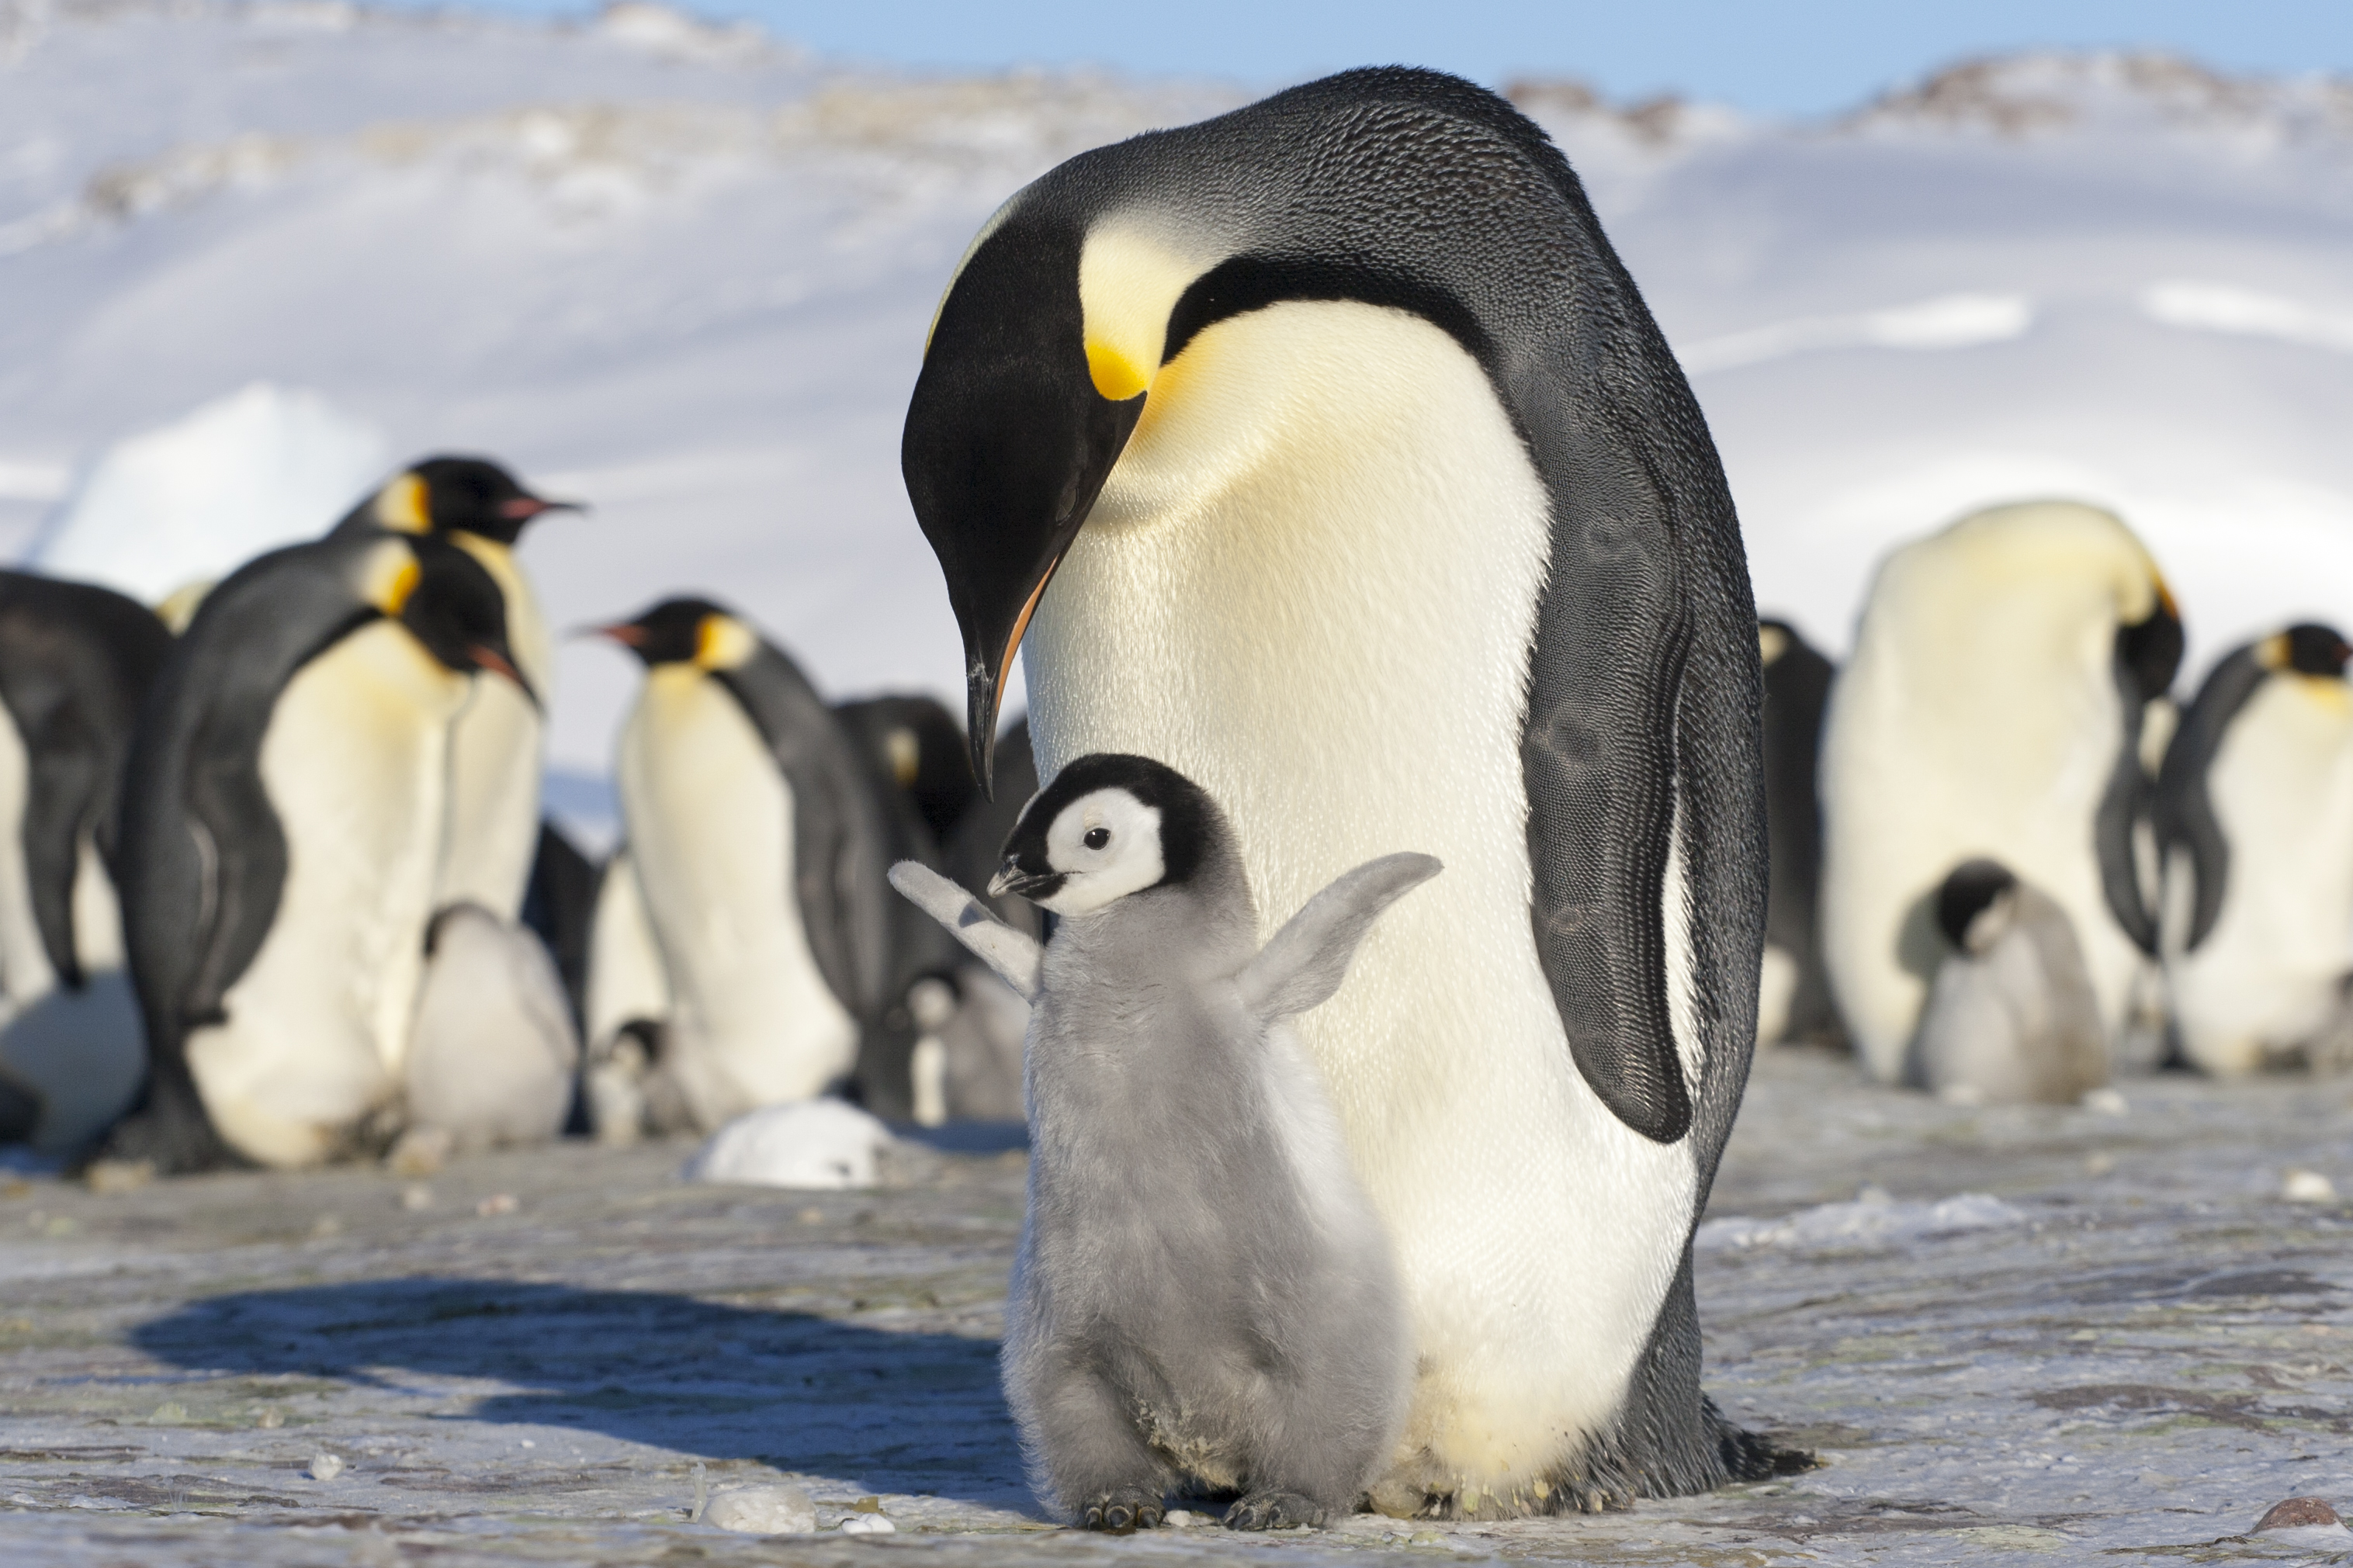 Elolvadt a jég, több ezer császárpingvin-fióka fulladt a tengerbe